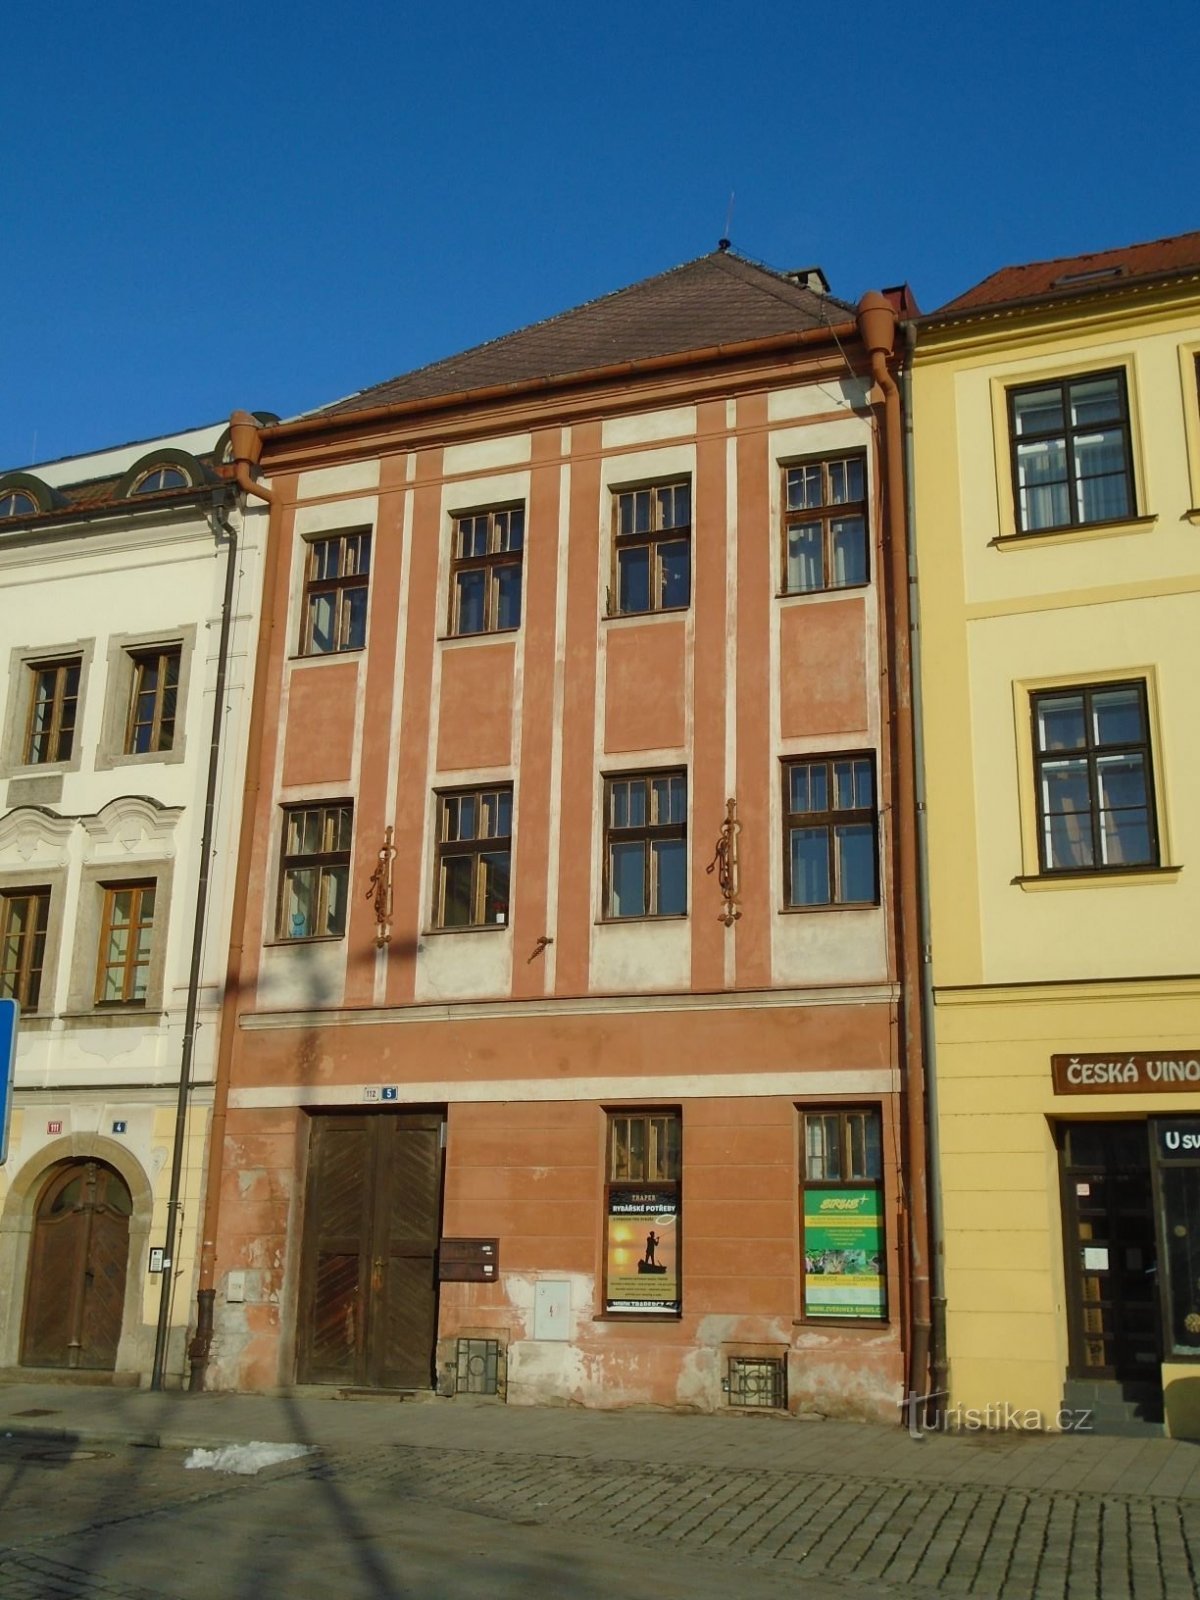 Malé náměstí nr. 112 (Hradec Králové, 30.1.2019. april XNUMX)